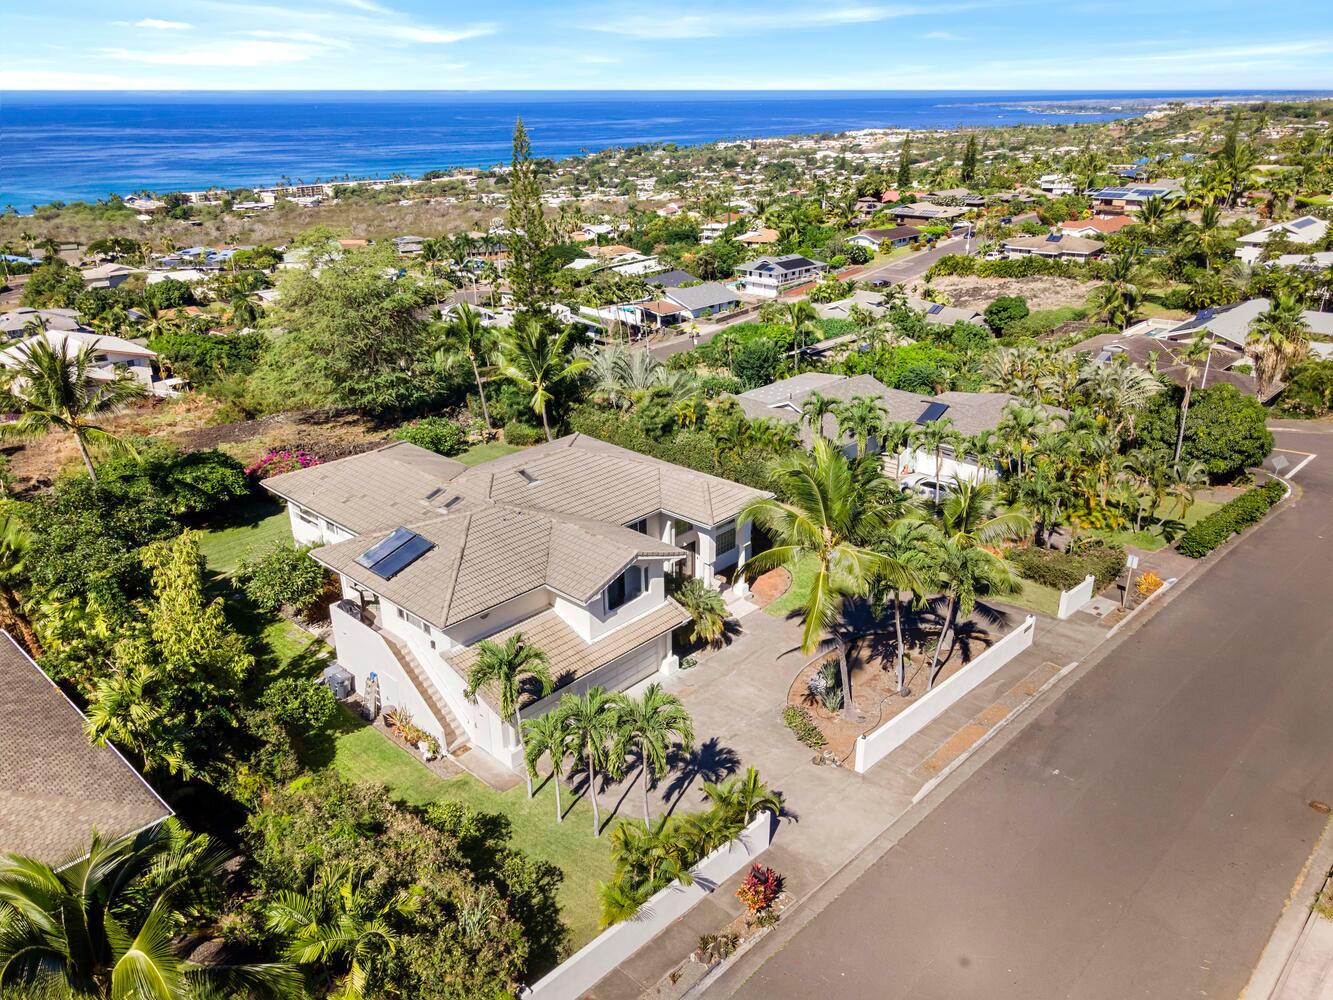 Kailua Kona Vacation Rentals, Ho'okipa Hale - Aerial shot of the home